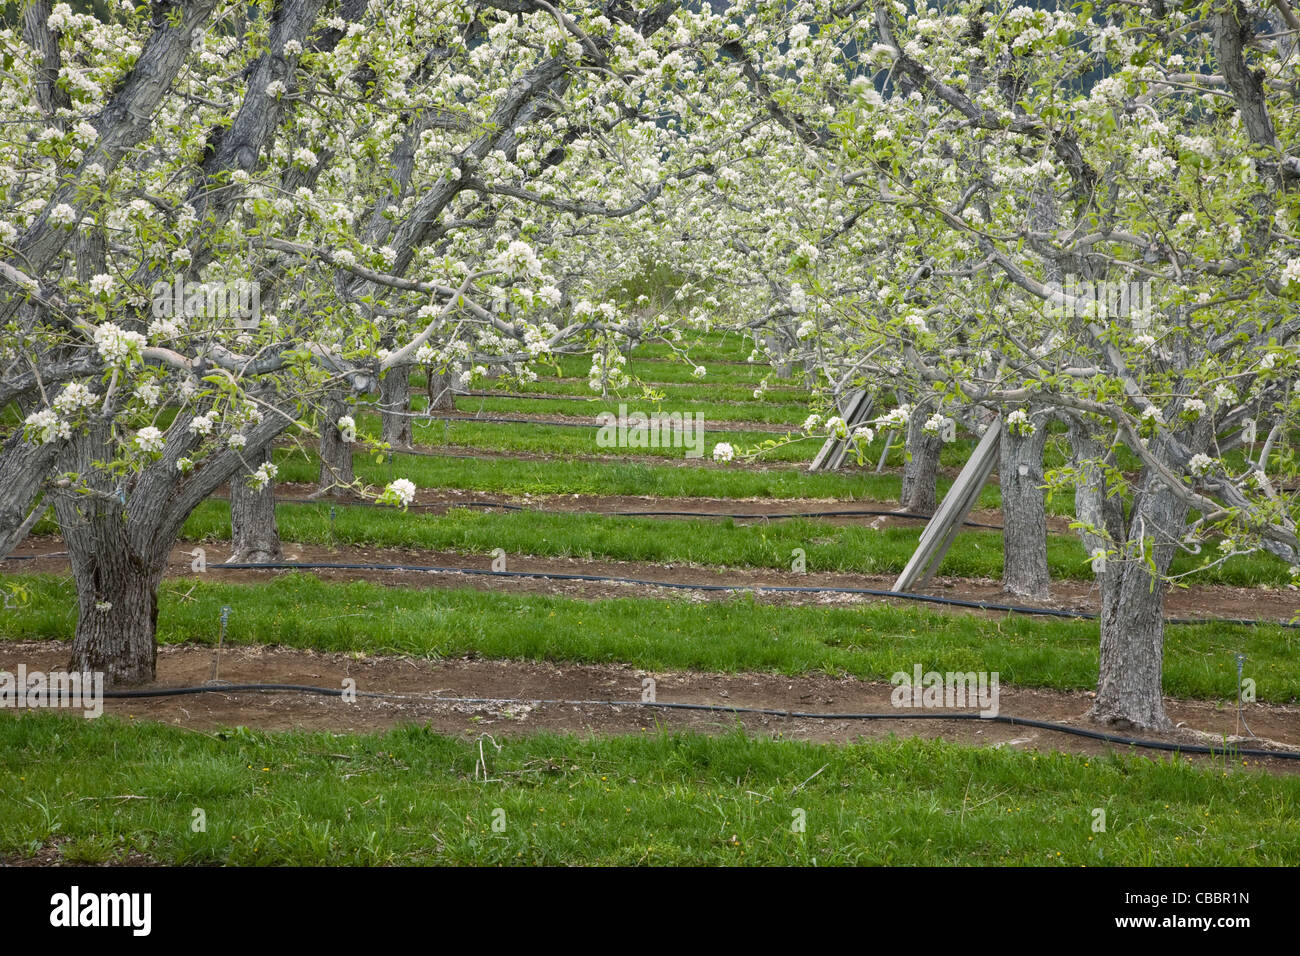 WASHINGTON - verger de pommiers en fleurs dans la vallée de la rivière Wenatchee près de Dryden. Banque D'Images